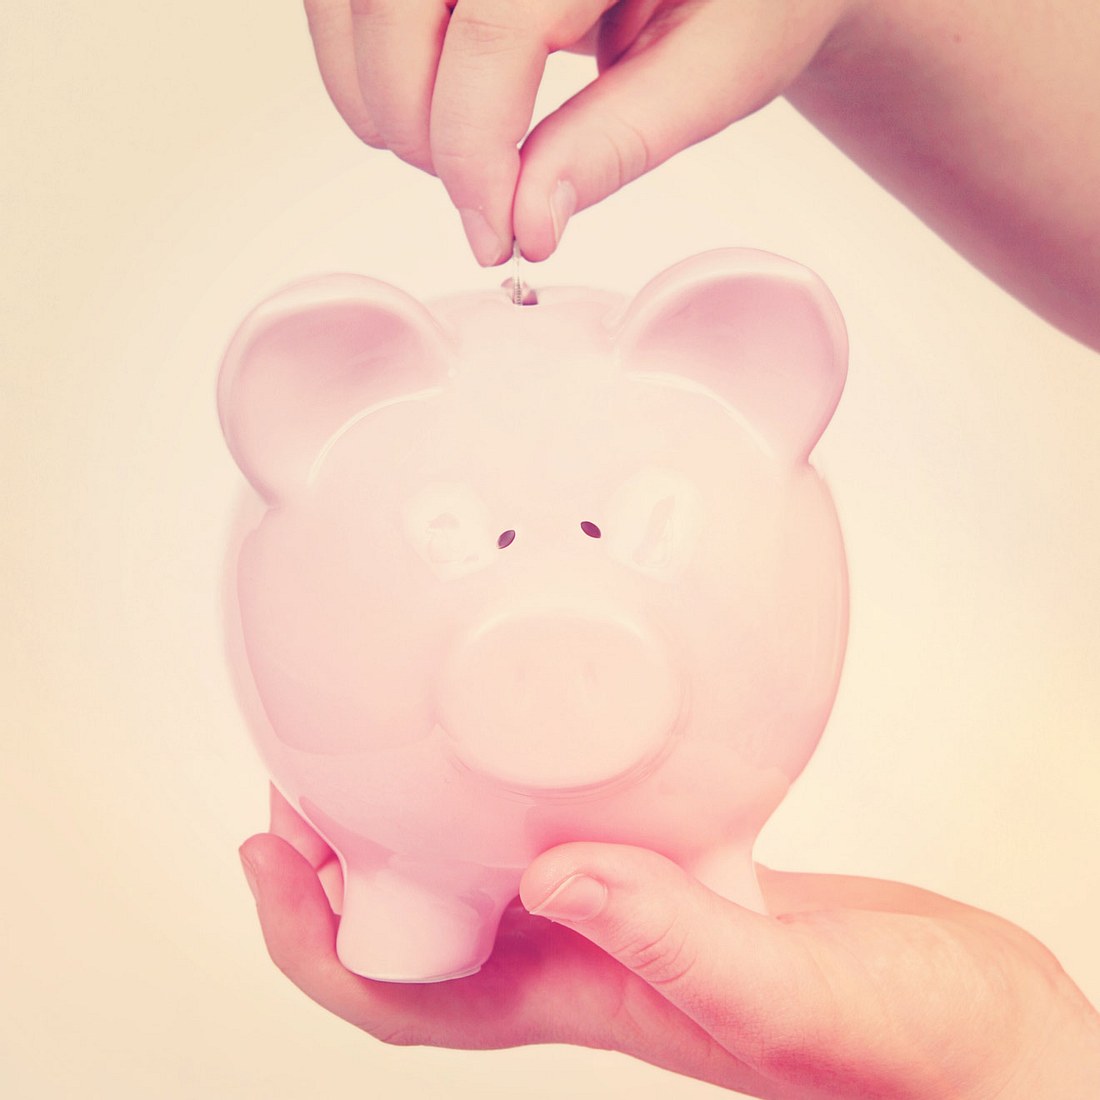 Geld sparen leicht gemacht! 10 hilfreiche Spartipps